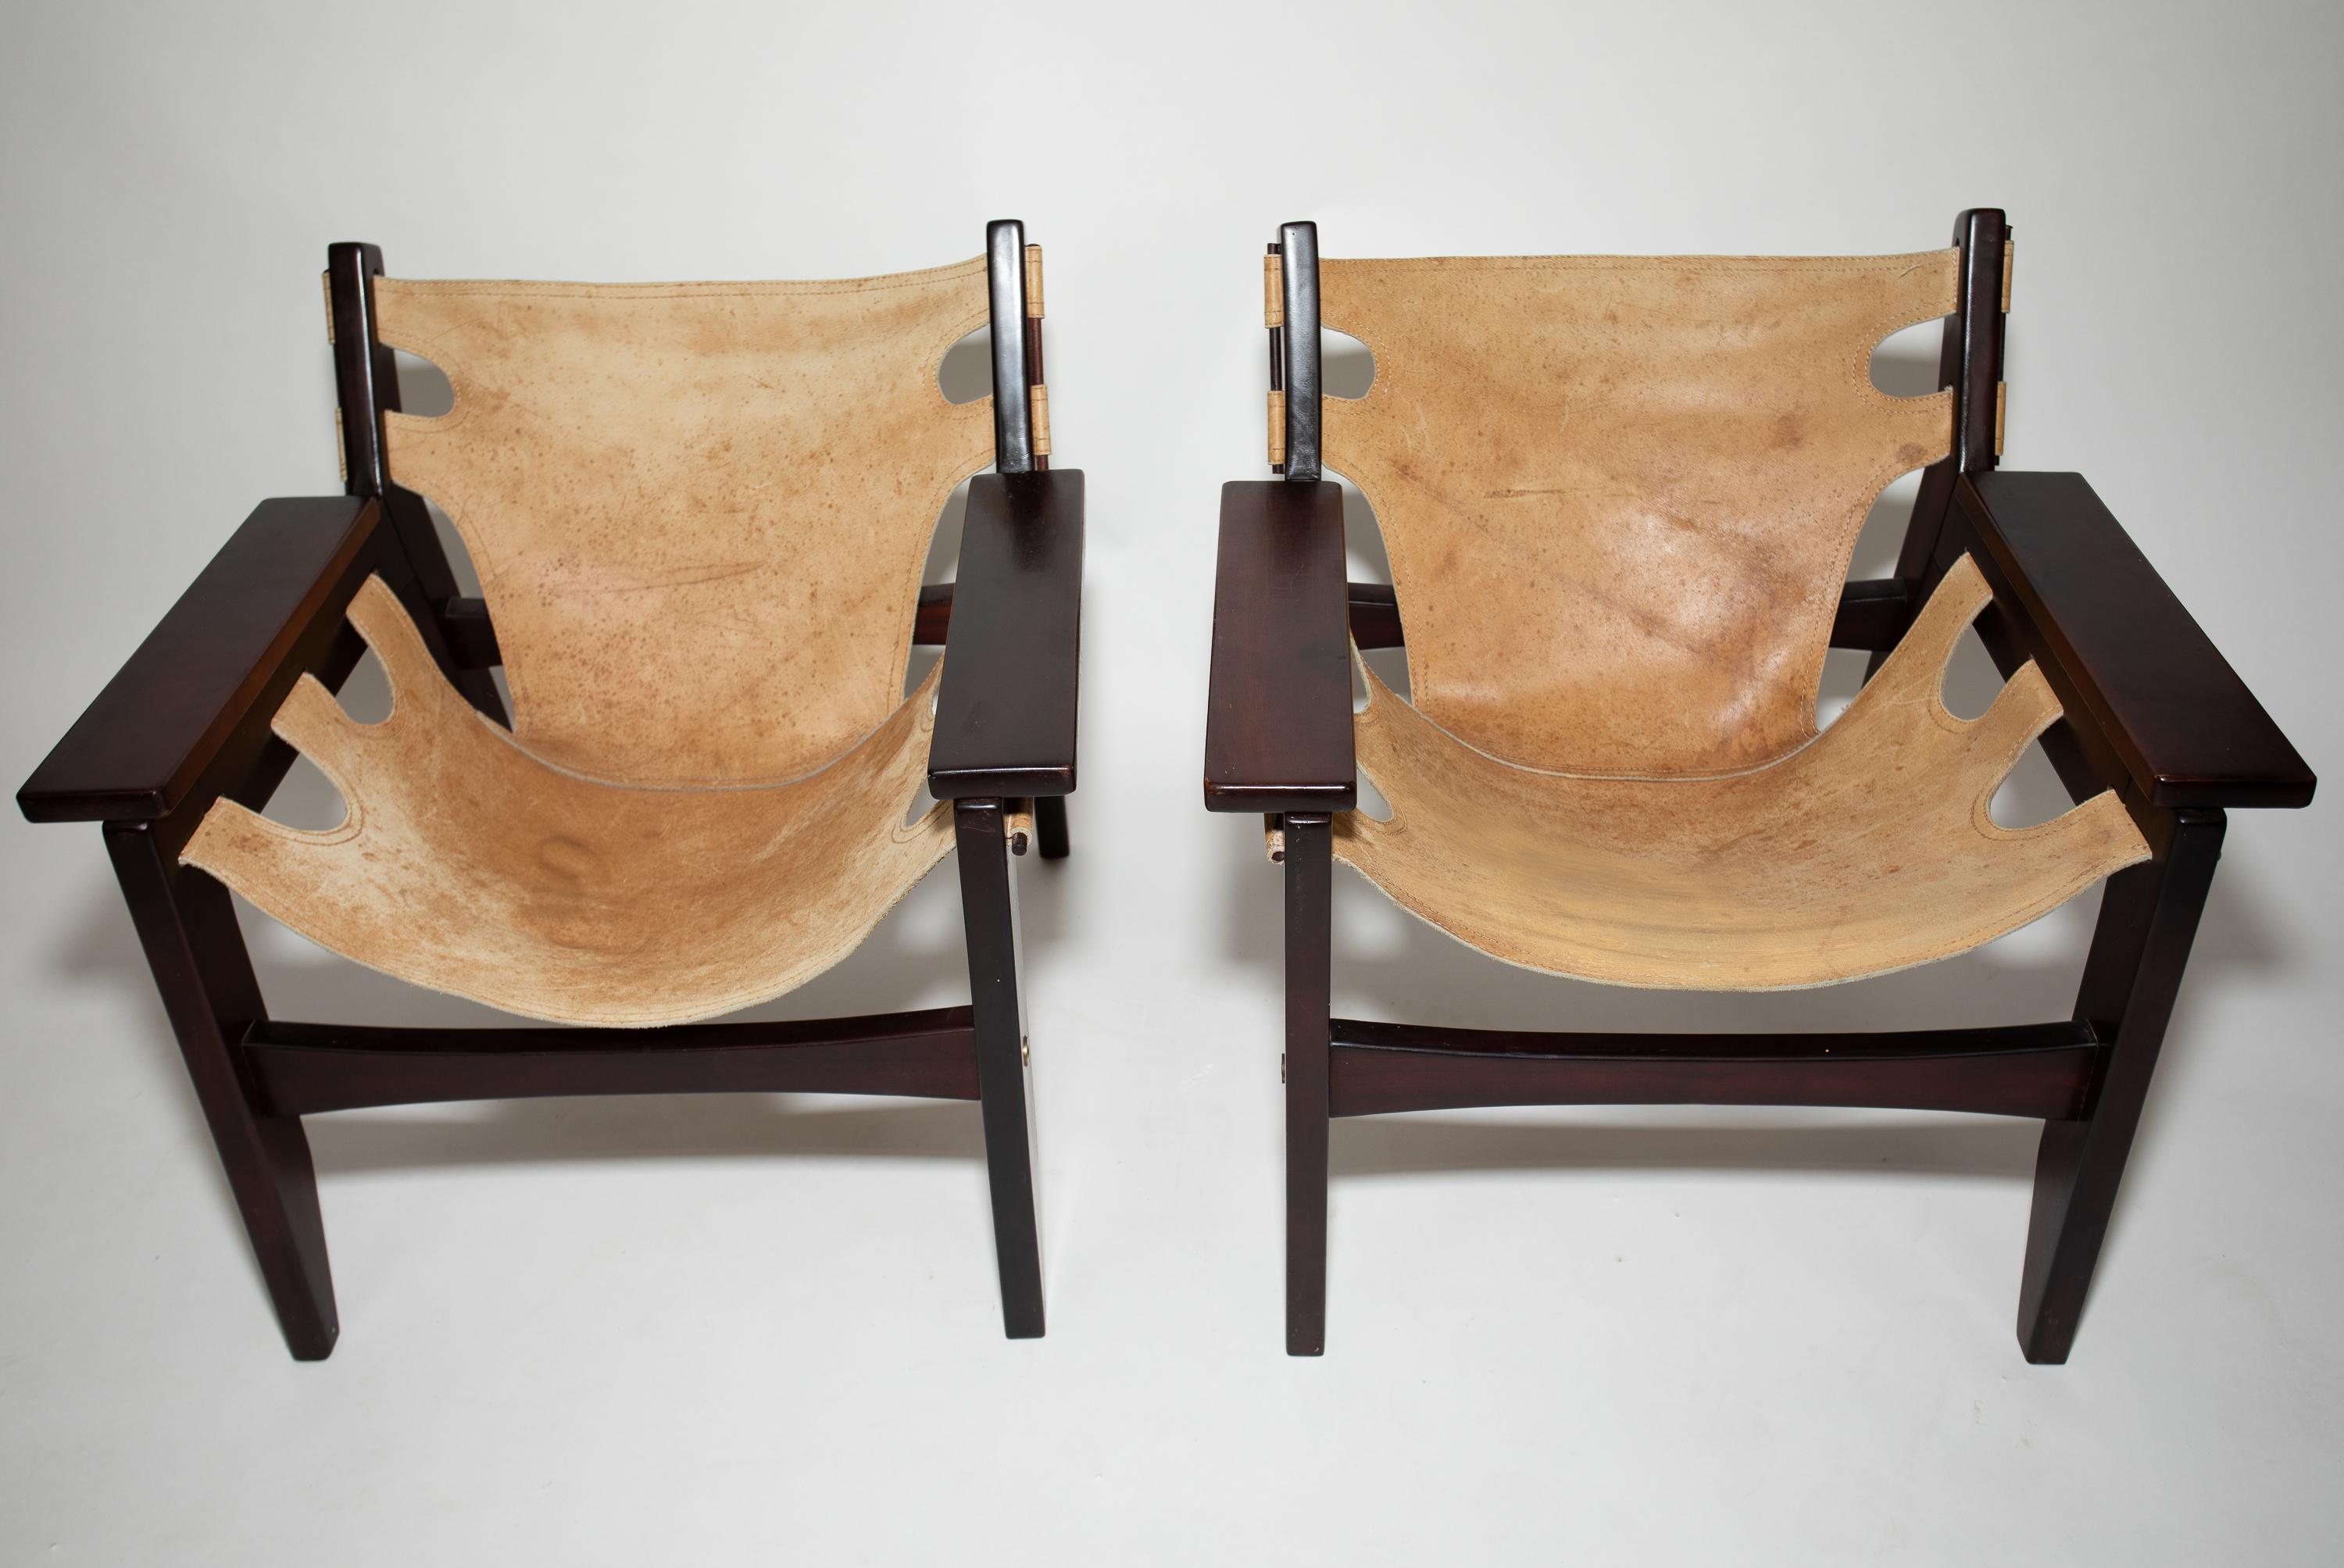 Sergio Rodrigues Kilin Chaires.
Cuir original et surface en bois.
Présence du Label OCA.